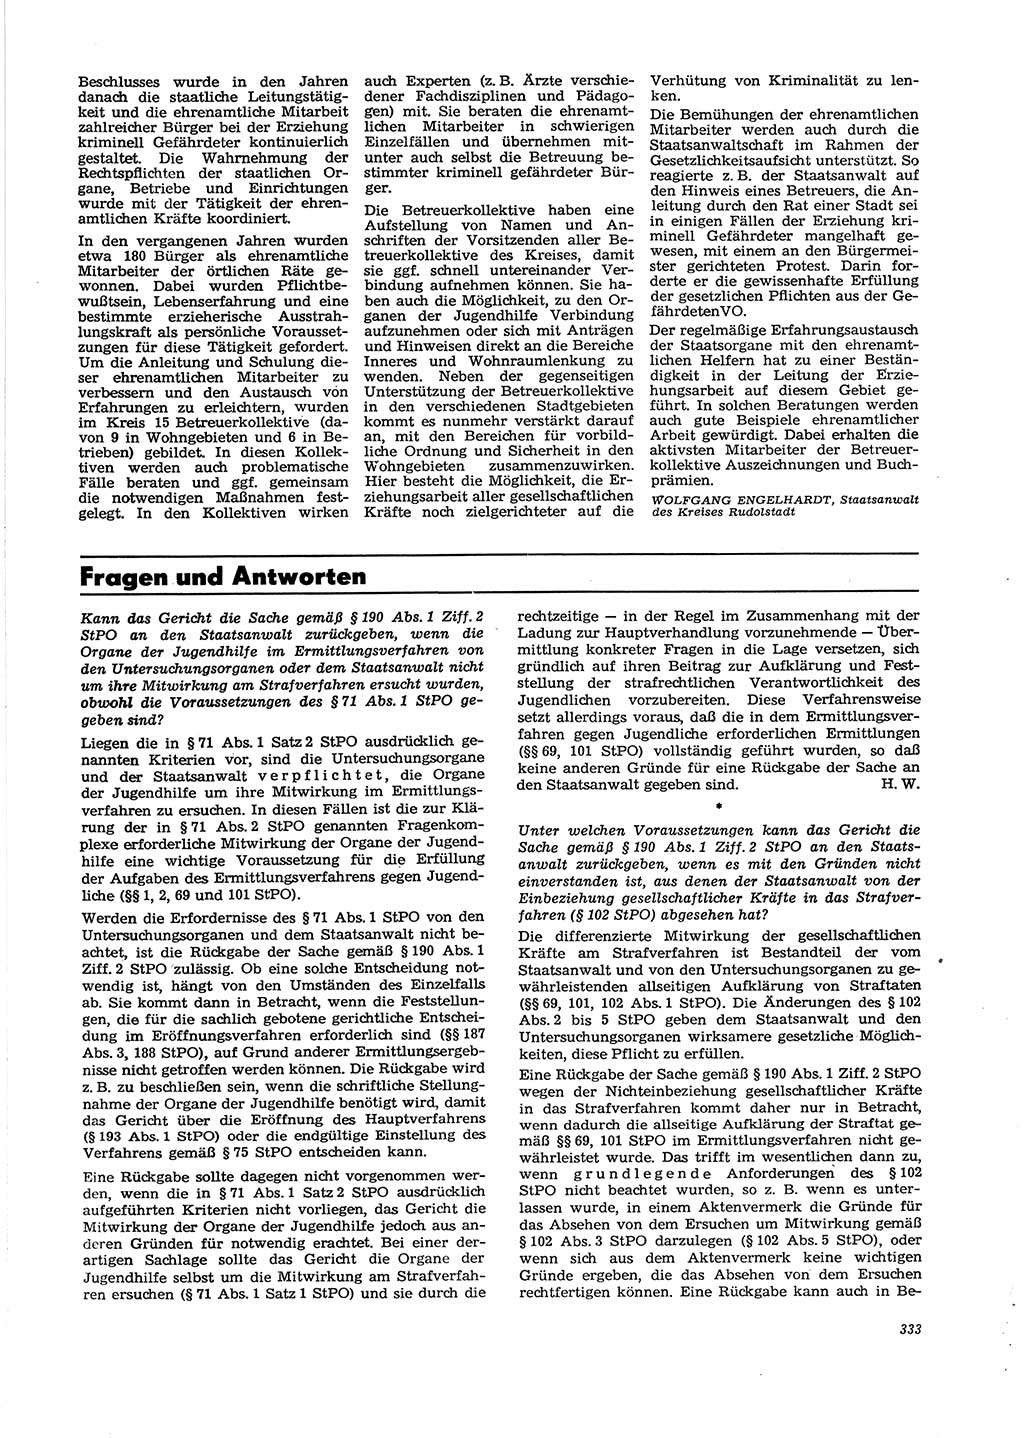 Neue Justiz (NJ), Zeitschrift für Recht und Rechtswissenschaft [Deutsche Demokratische Republik (DDR)], 29. Jahrgang 1975, Seite 333 (NJ DDR 1975, S. 333)